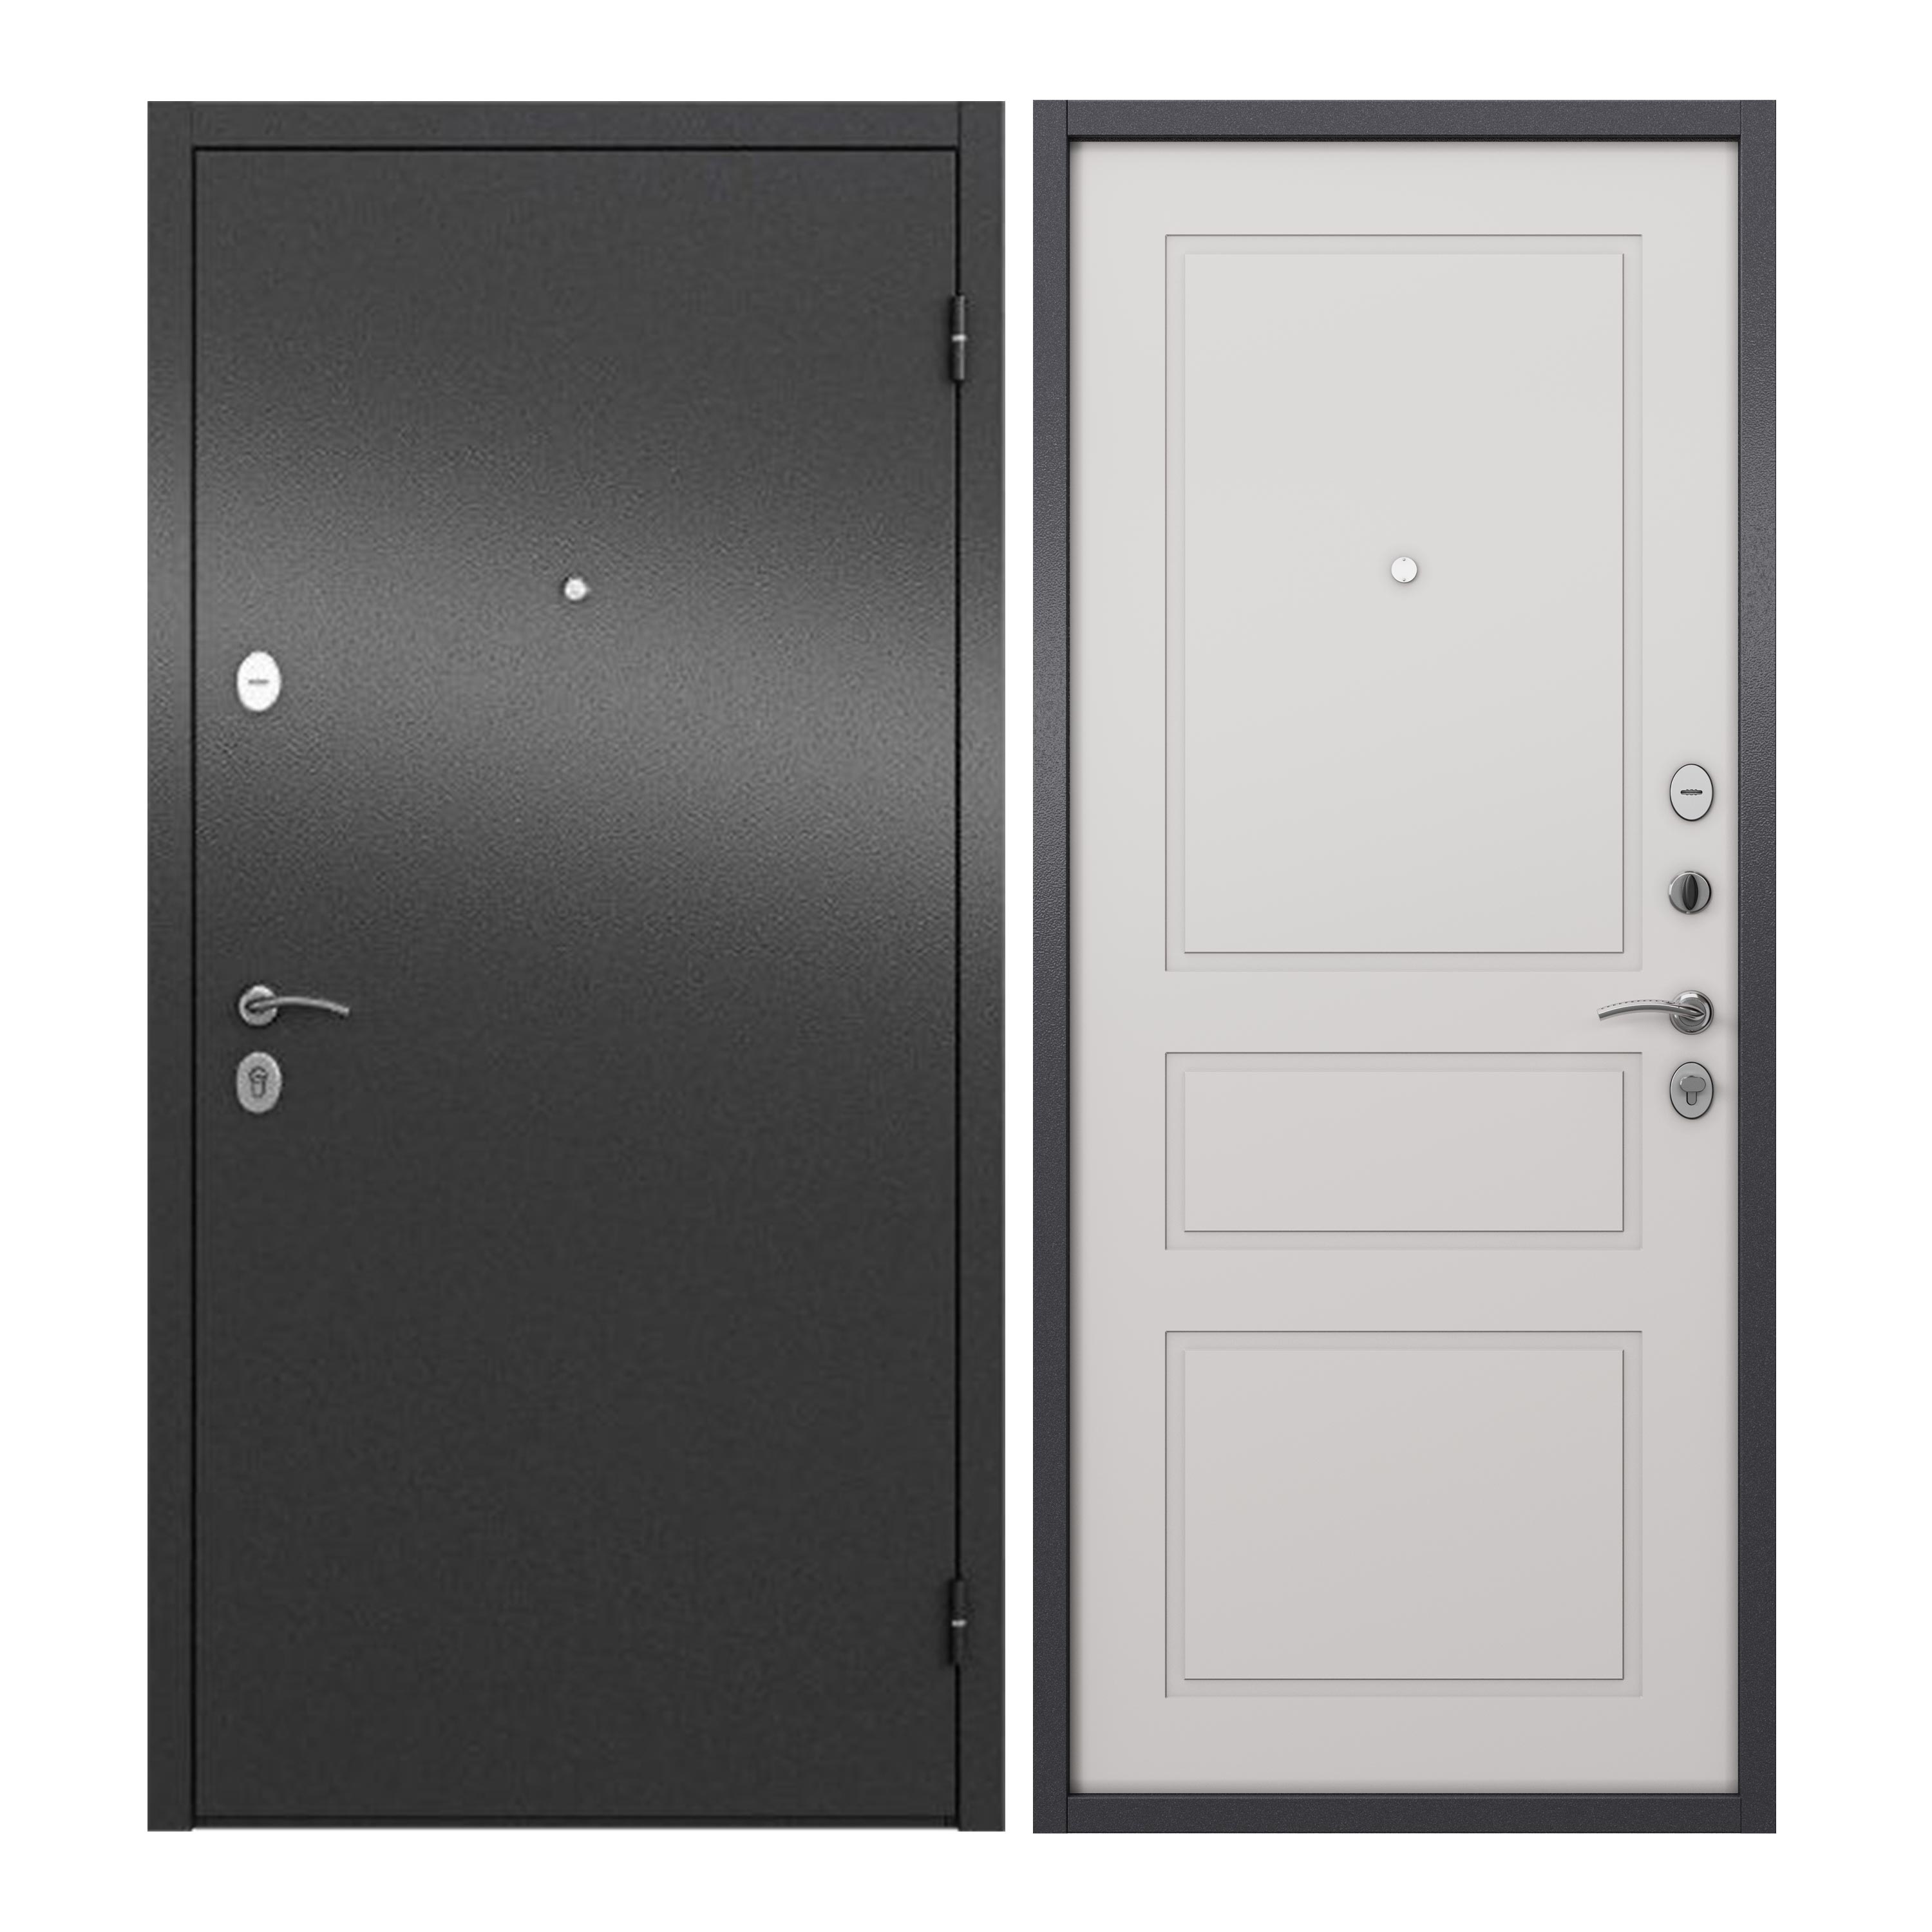 Дверь входная для квартиры ProLine металлическая Apartment 960х2050, правая, серый/белый